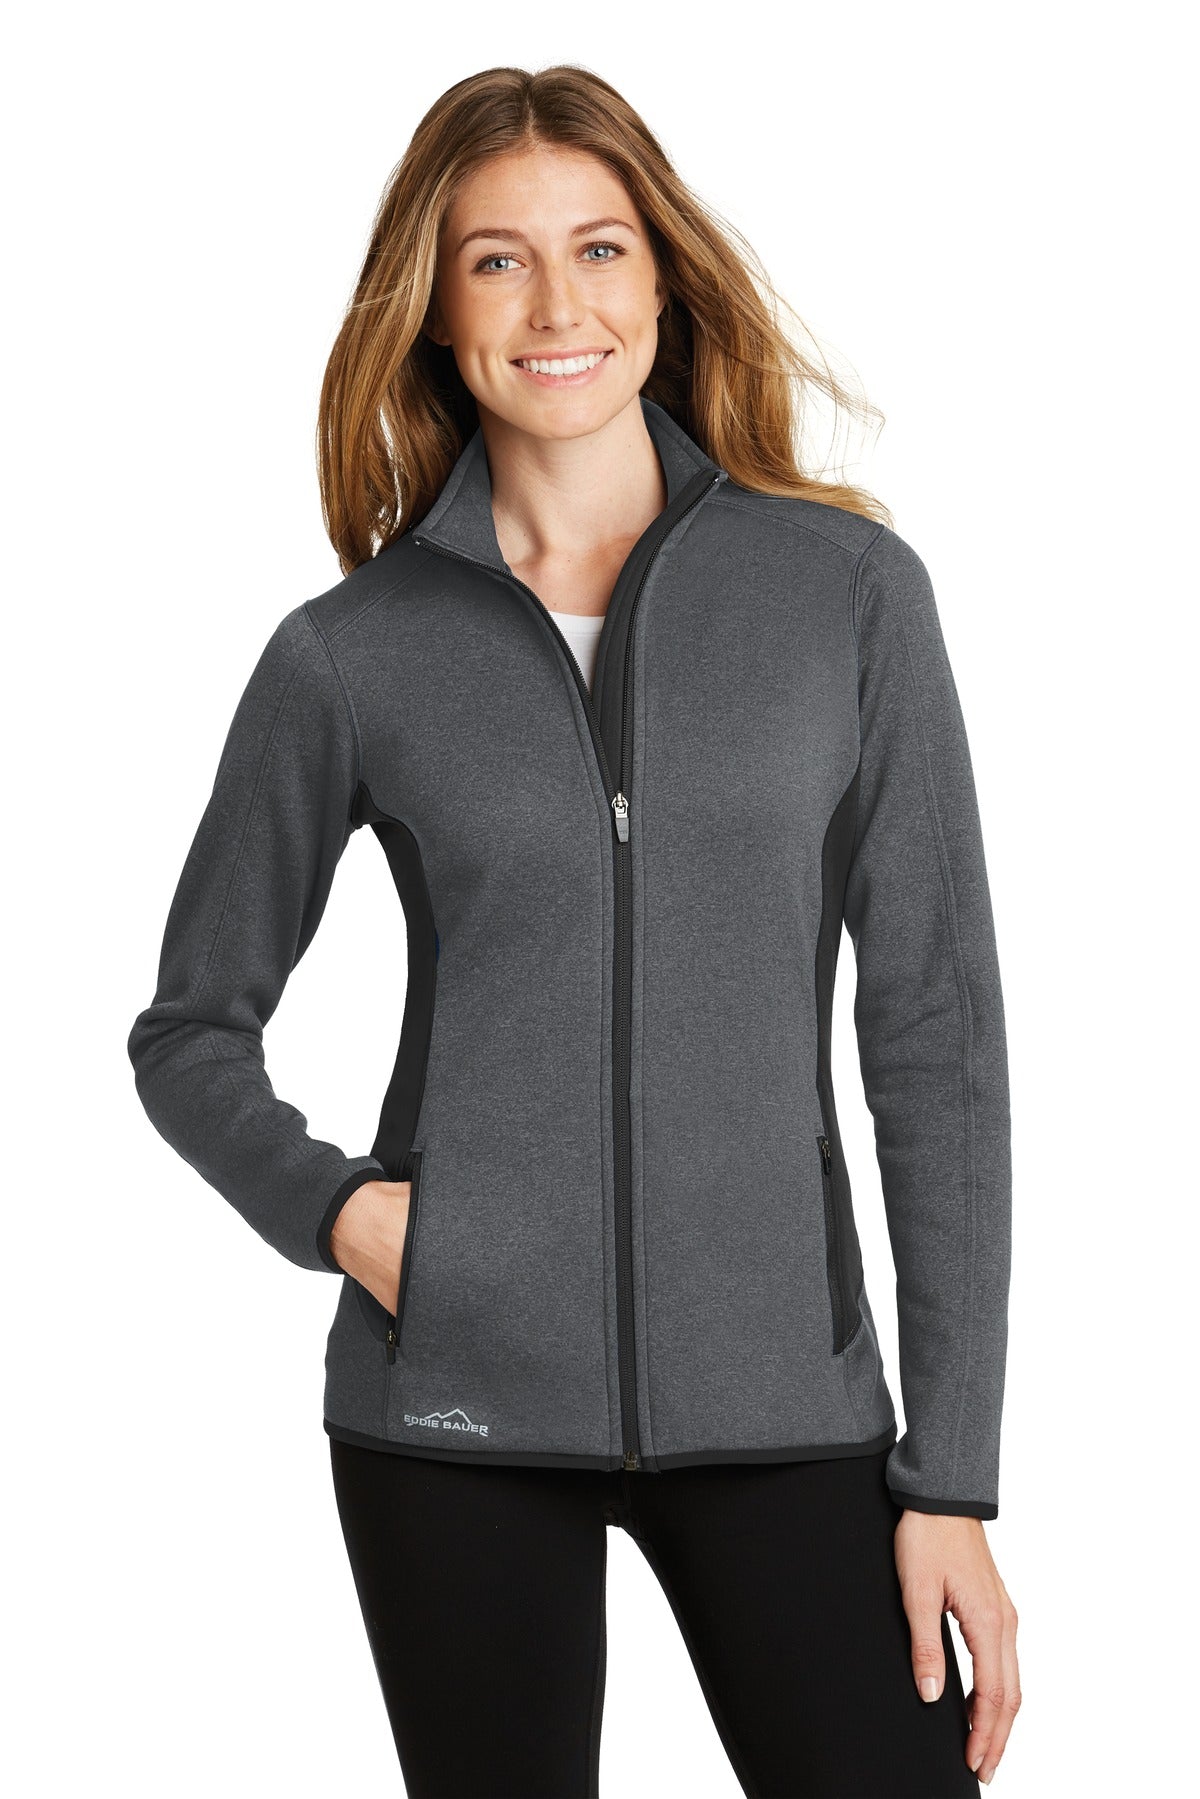 Eddie Bauer® Ladies Full-Zip Heather Stretch Fleece Jacket. EB239 - DFW Impression